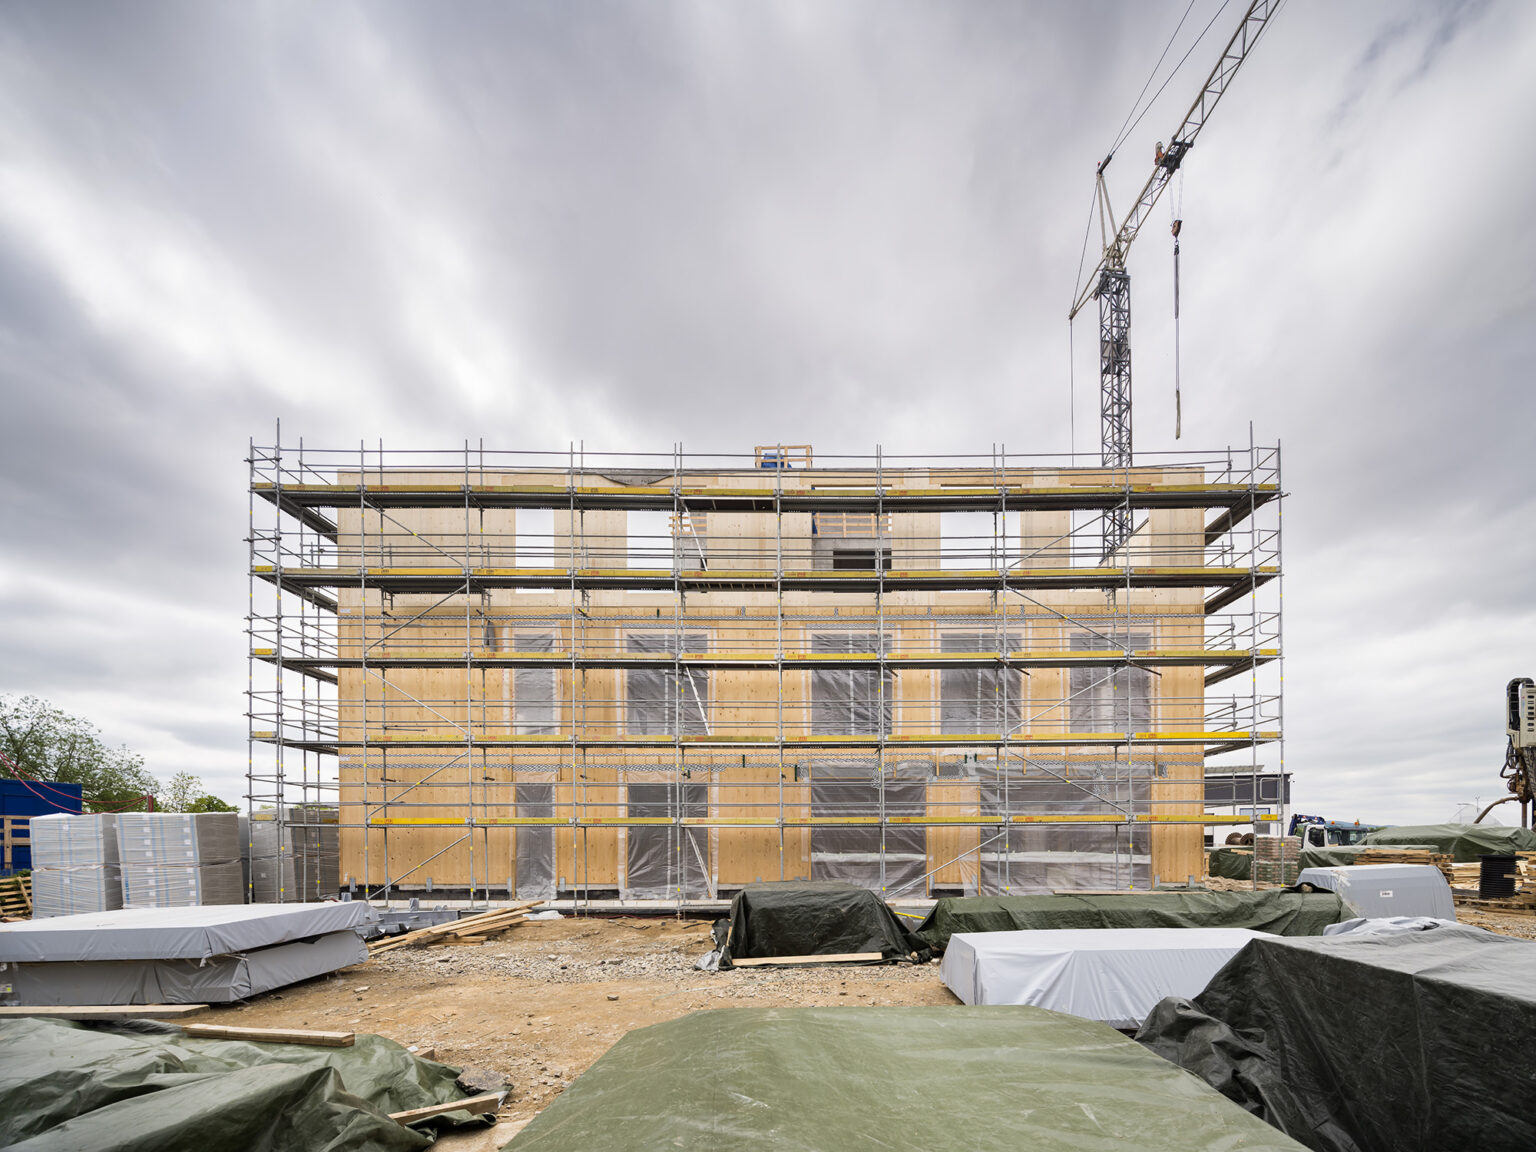 Studio Perspektiv dokončuje první čtyřpodlažní administrativní stavbu v Česku. Na projektu spolupracuje také Taros Nova